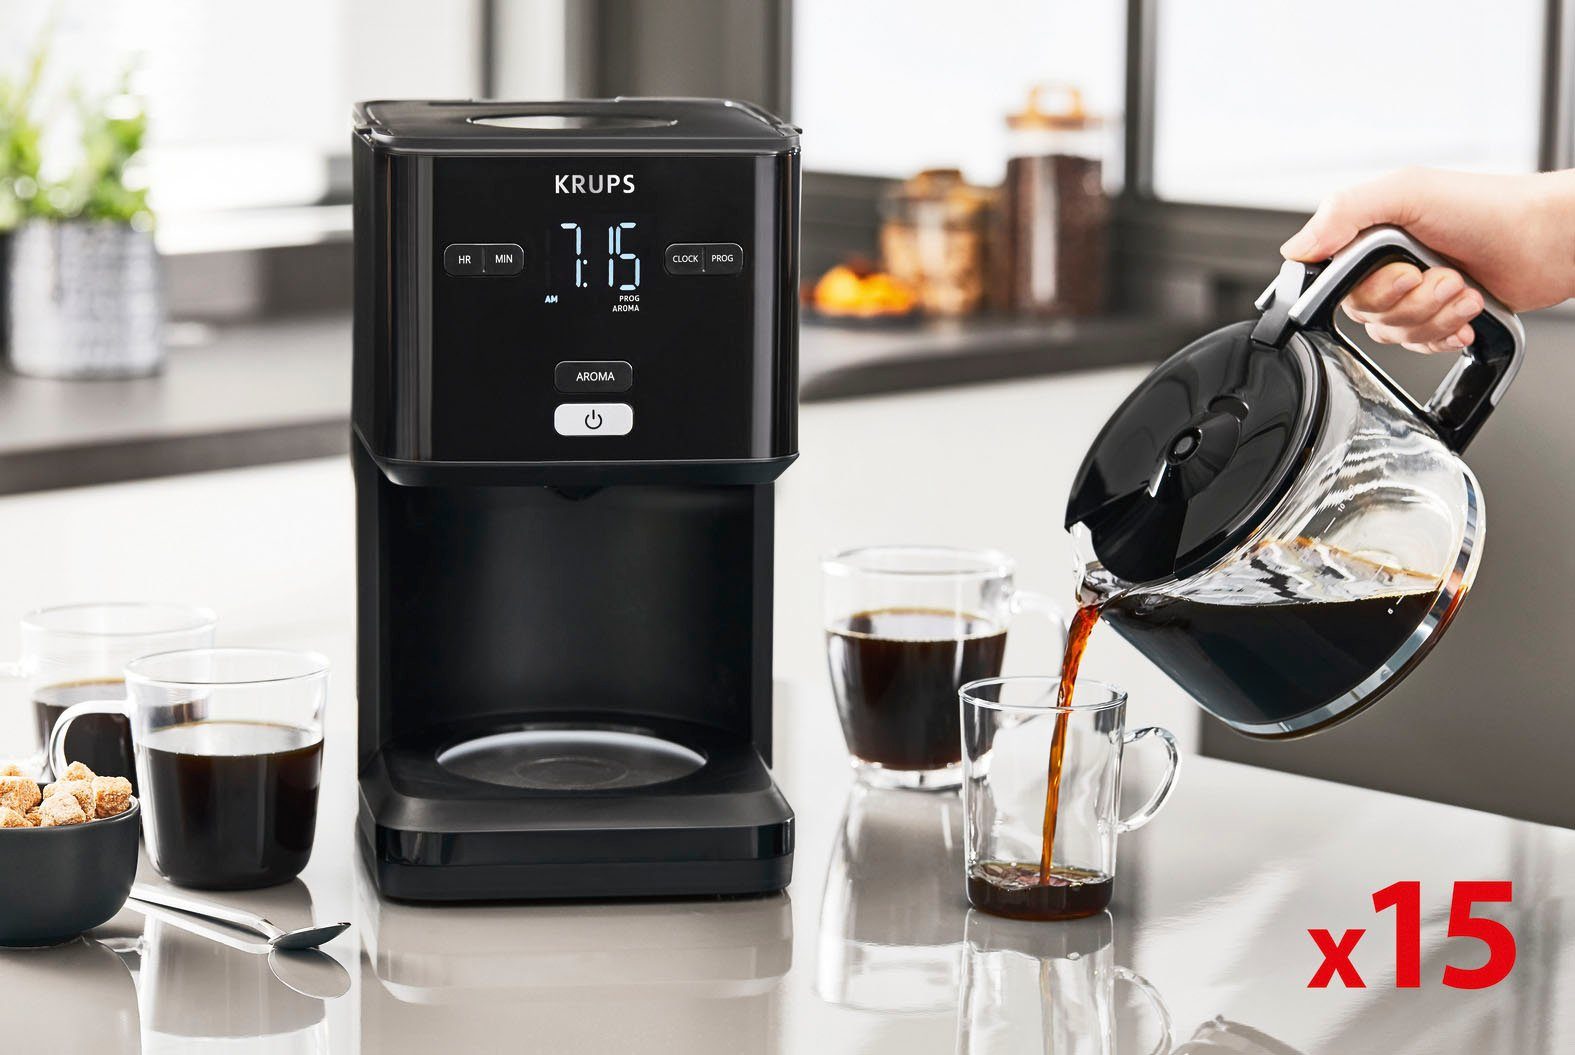 Smart'n Filterkaffeemaschine 24-Std-Timer, nach KM6008 30 Krups Light, 1,25l Abschaltung Kaffeekanne, automatische Minuten